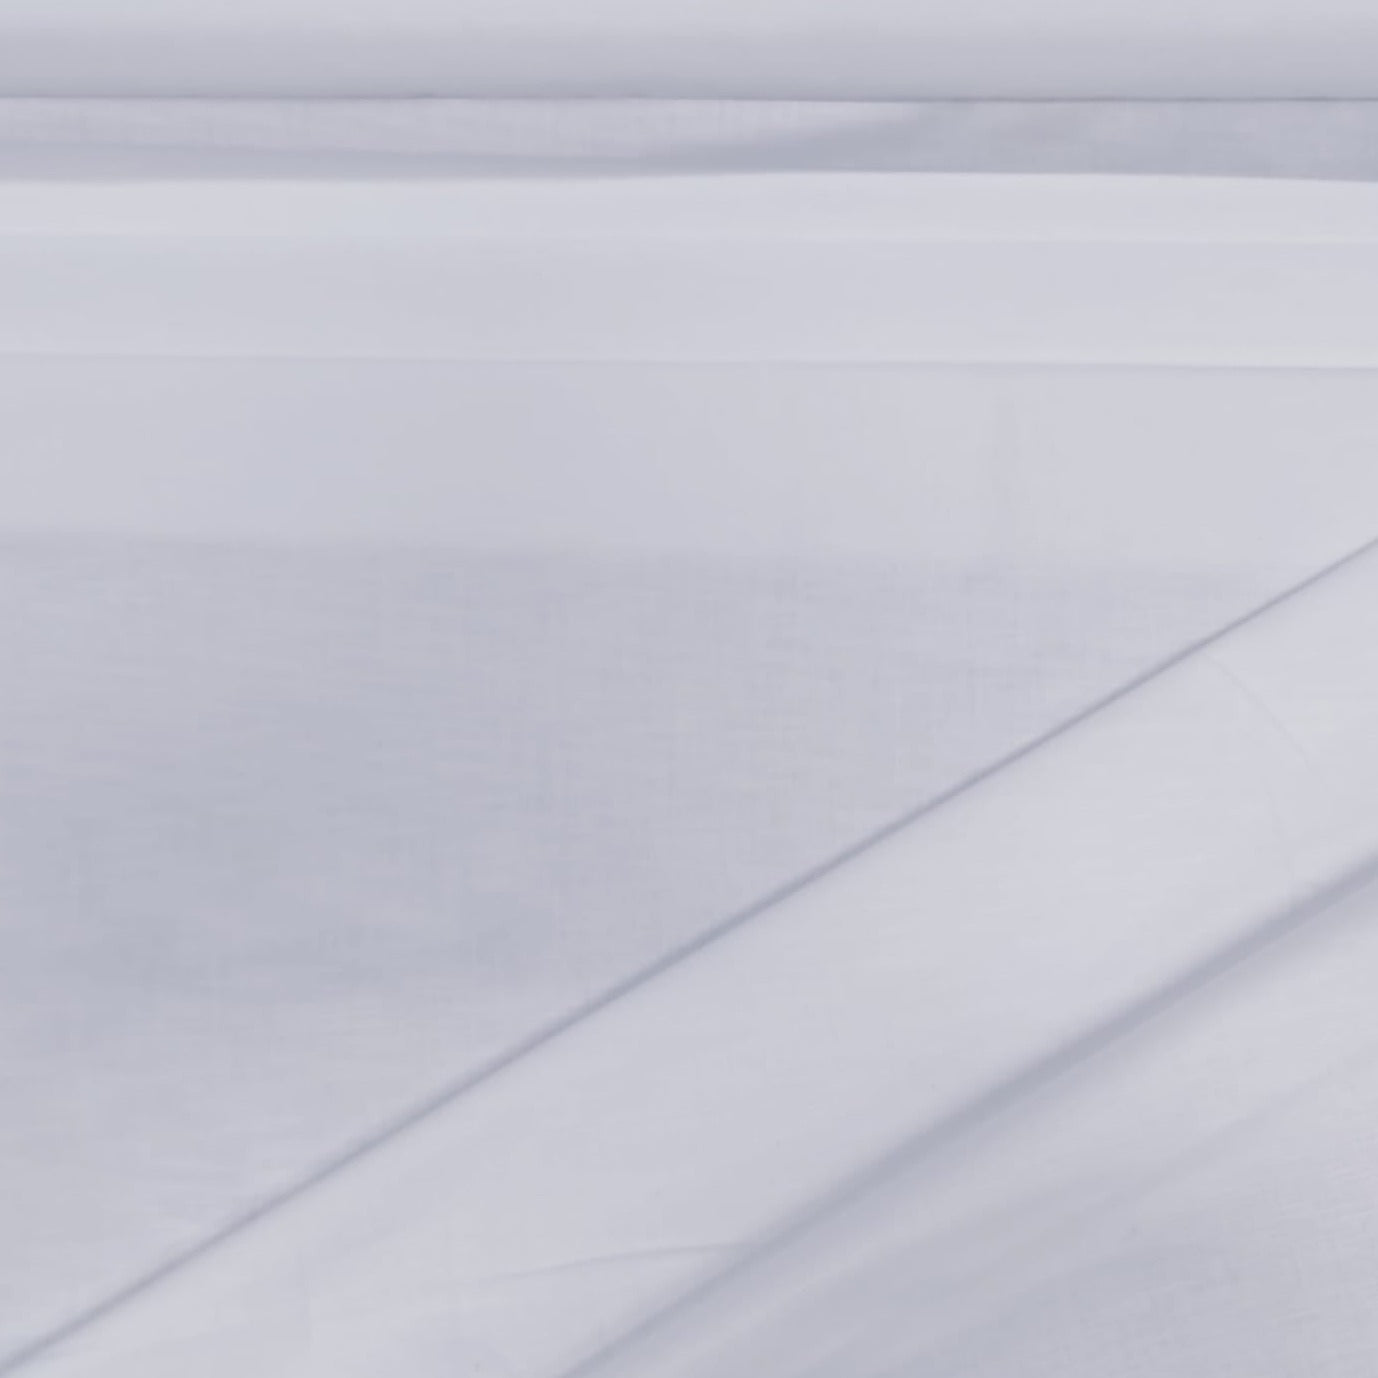 White Solid Fero Linen Fabric - TradeUNO